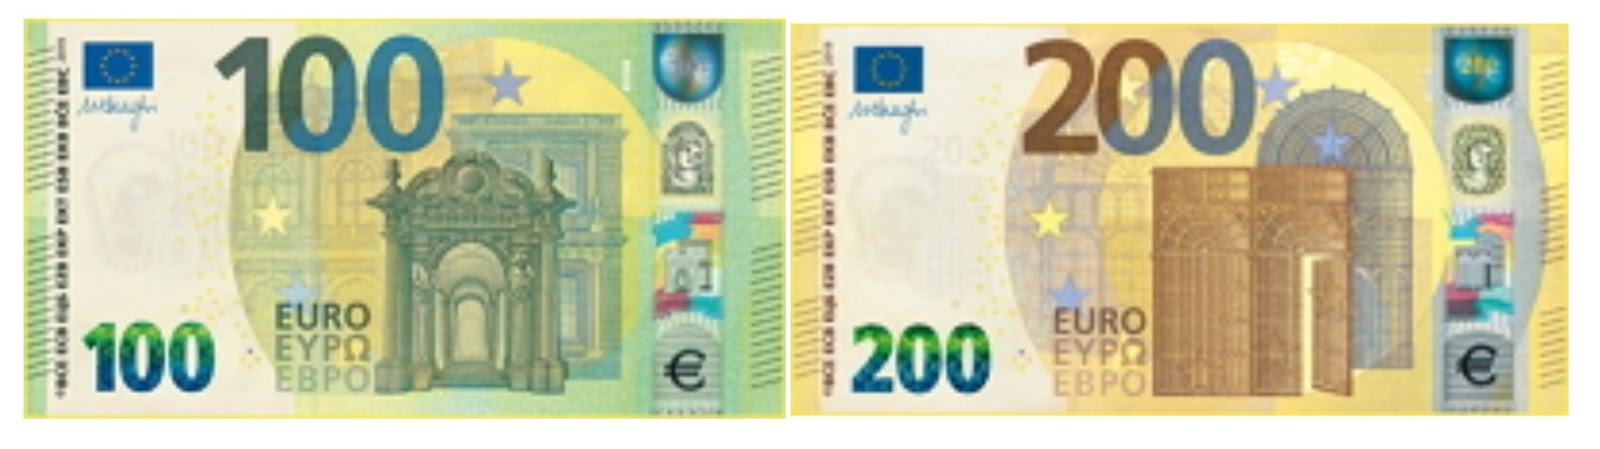 Размер евро купюры. Банкноты 100 евро нового образца.